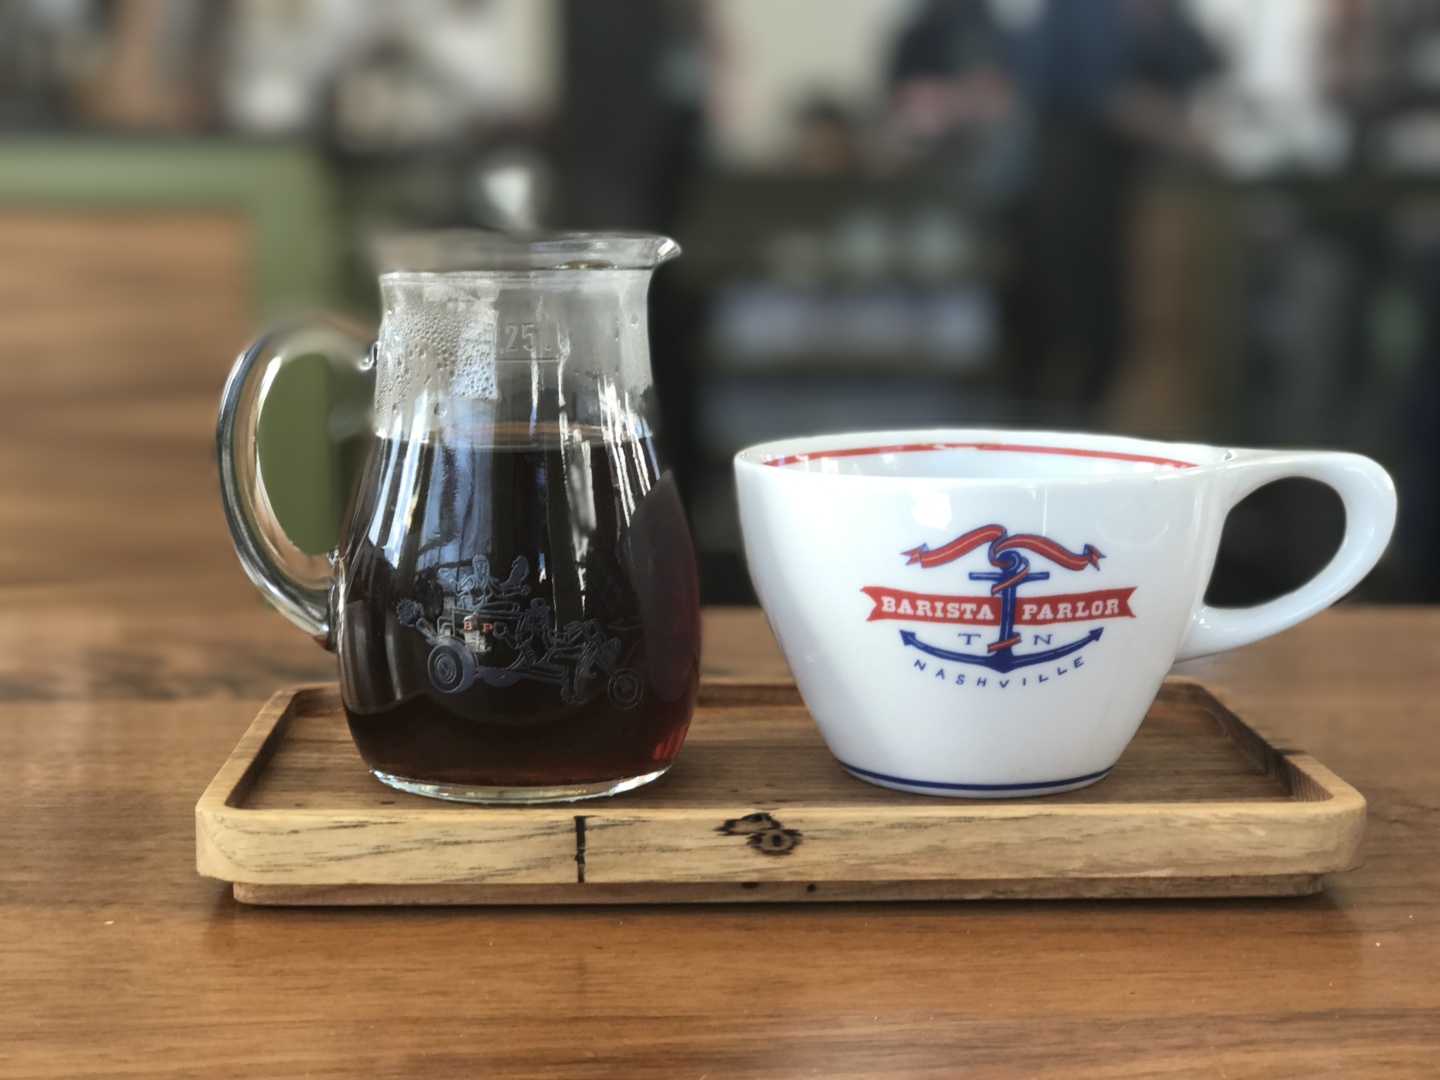 barista parlor brewed coffee